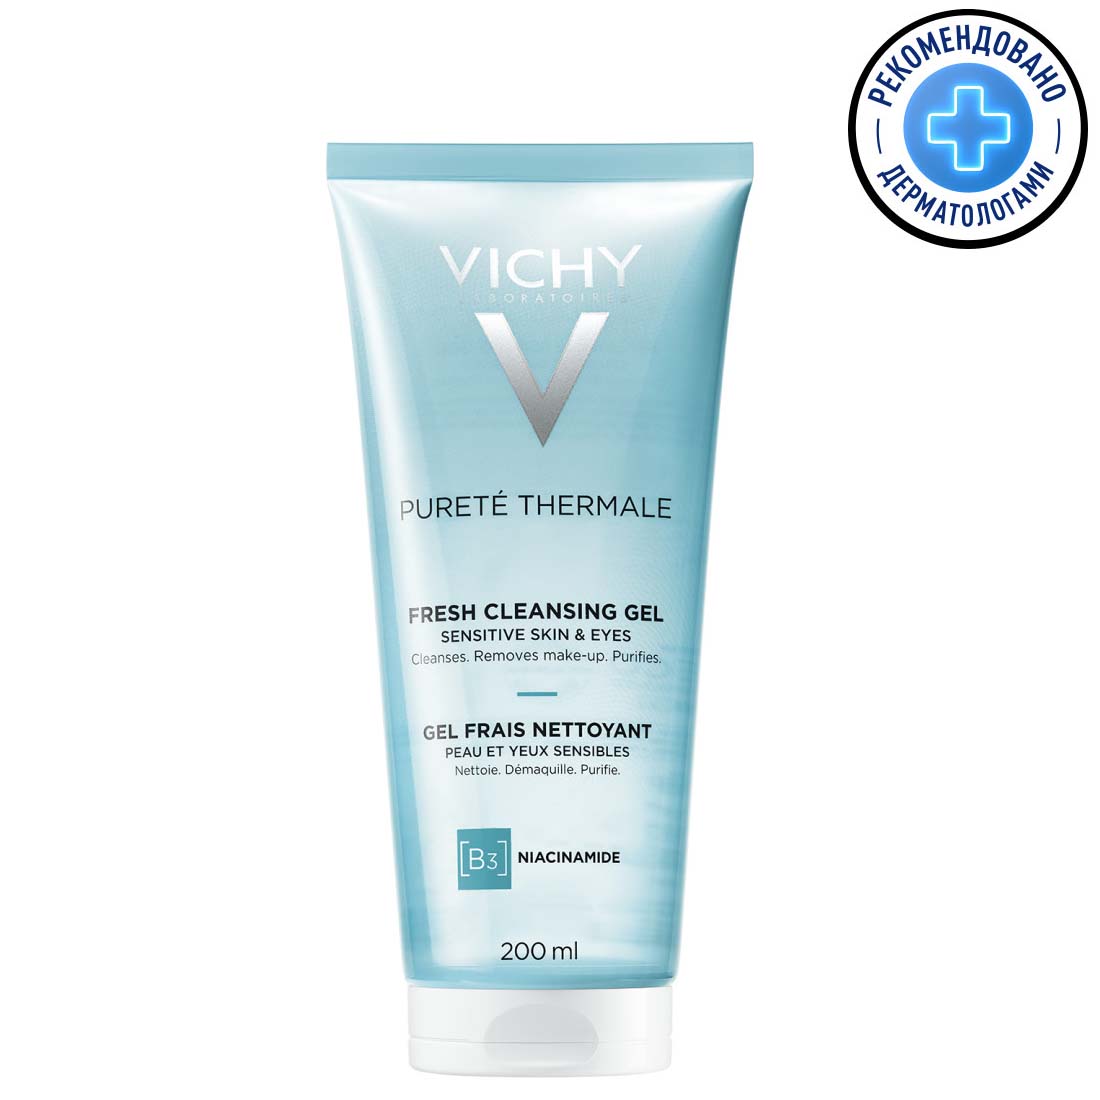 Vichy Очищающий освежающий гель для чувствительной кожи лица и вокруг глаз, 200 мл (Vichy, Purete Thermal)